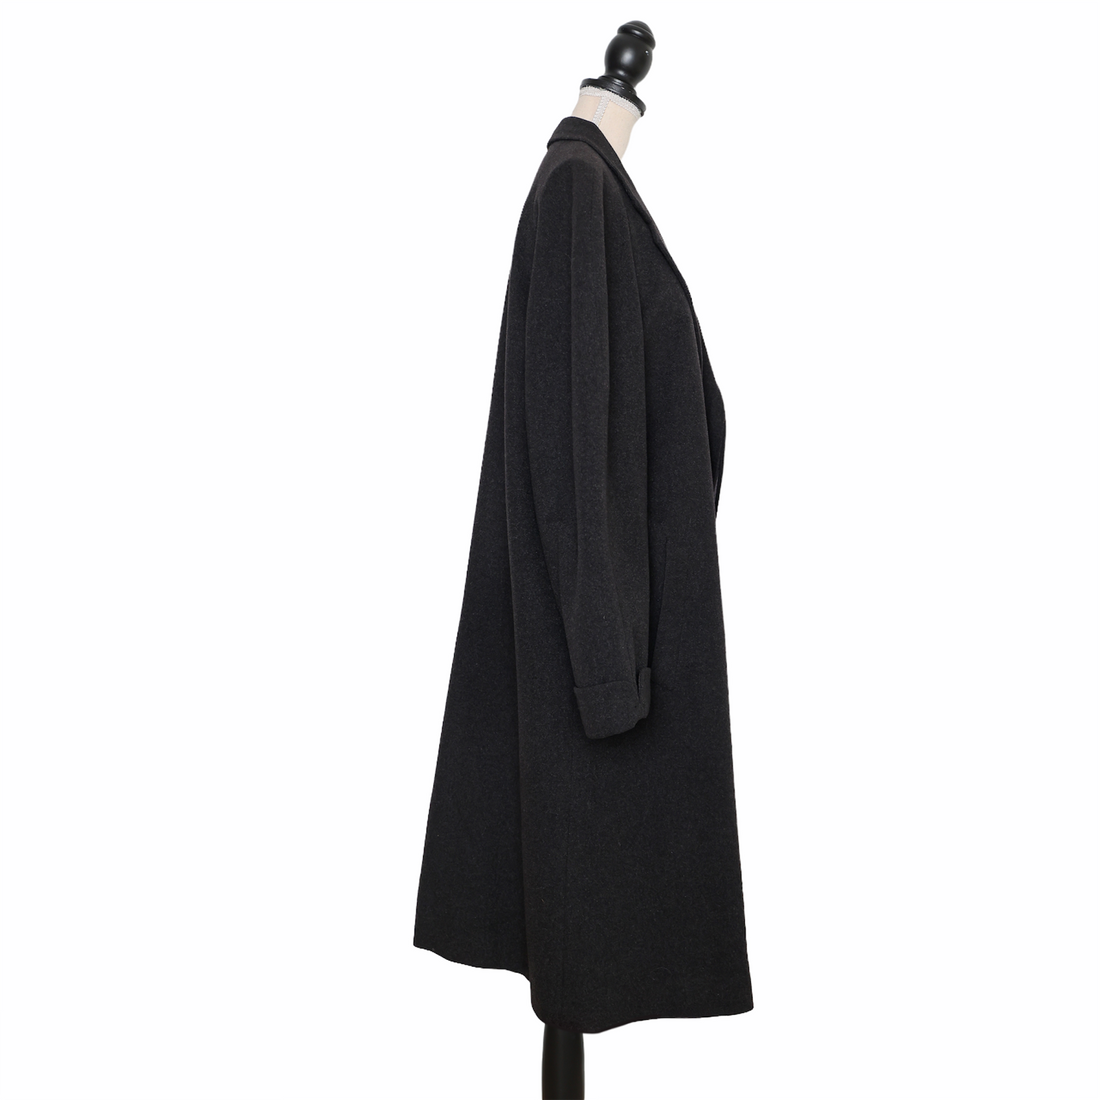 Kiton men's cashmere coat